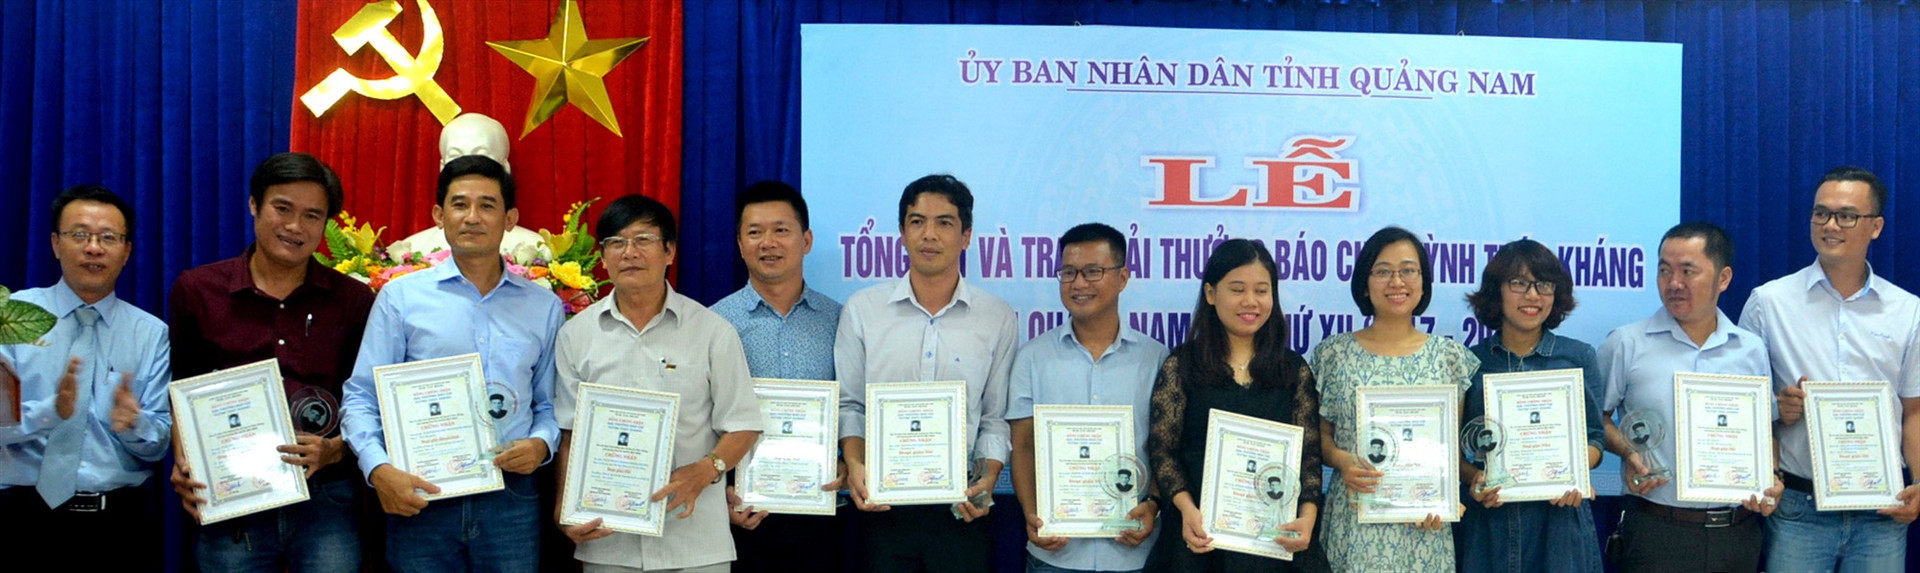 Các phóng viên đoạt Giải báo chí Huỳnh Thúc Kháng lần thứ XII (2017-2018).